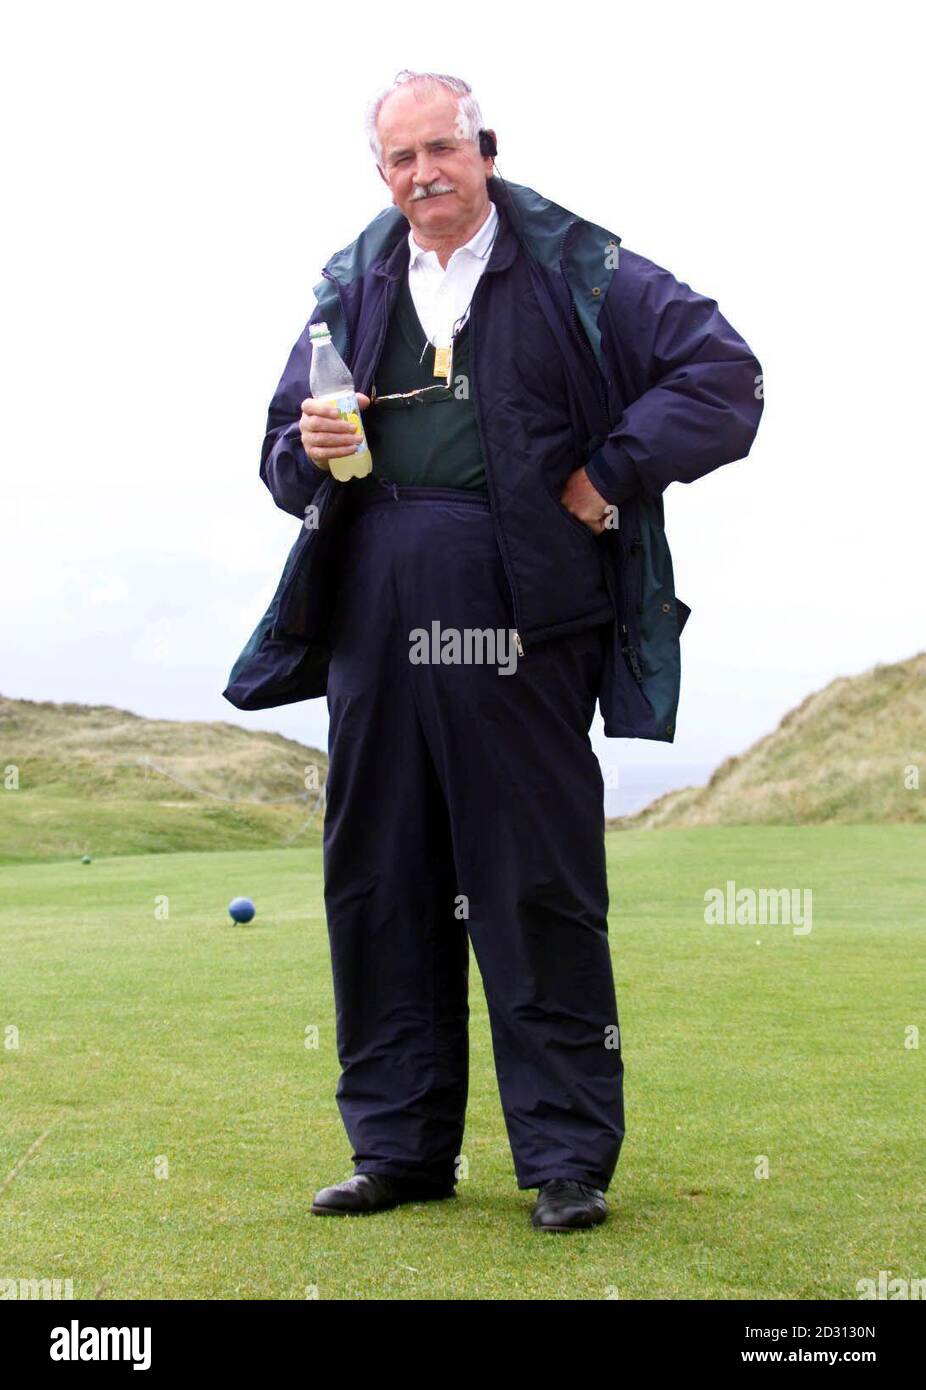 El caddie maestro de European Tour Willy Aitchison, que tiene setenta años, en el Smurfit European Open en el K Club cerca de Dublín. Aitchison, quien caddie por Lee Trevino cuando ganó el Abierto en 1971 y 1972, ha sido pedido por el golfista a caddie por él una última vez. * en lo que el golfista americano verá como su última aparición abierta en St Andrews, Escocia. Foto de stock